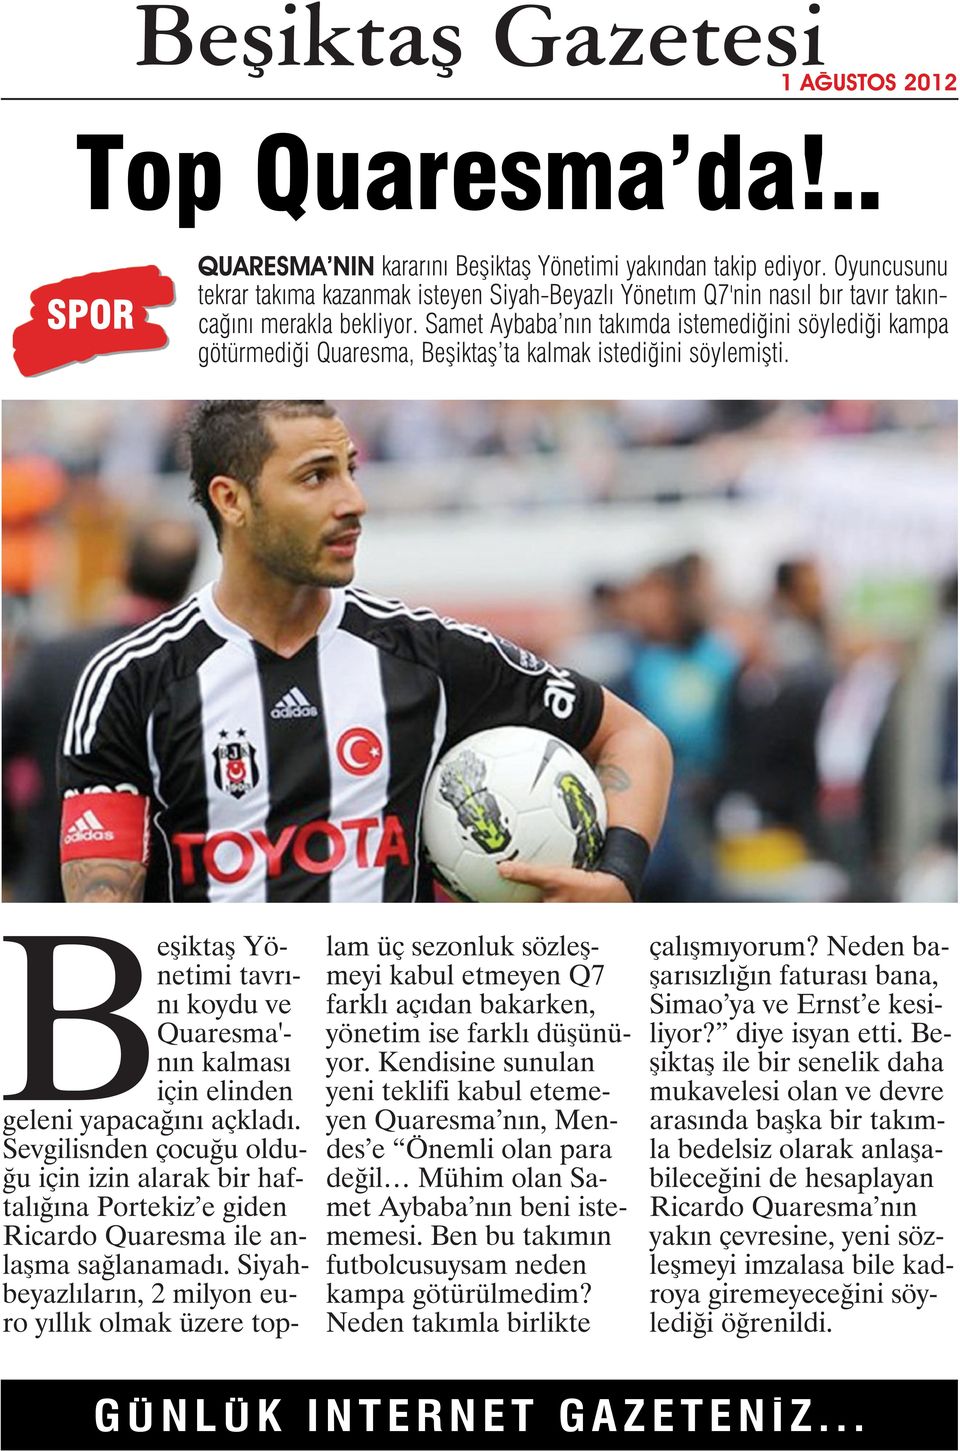 Samet Aybaba nın takımda istemediğini söylediği kampa götürmediği Quaresma, Beşiktaş ta kalmak istediğini söylemişti.